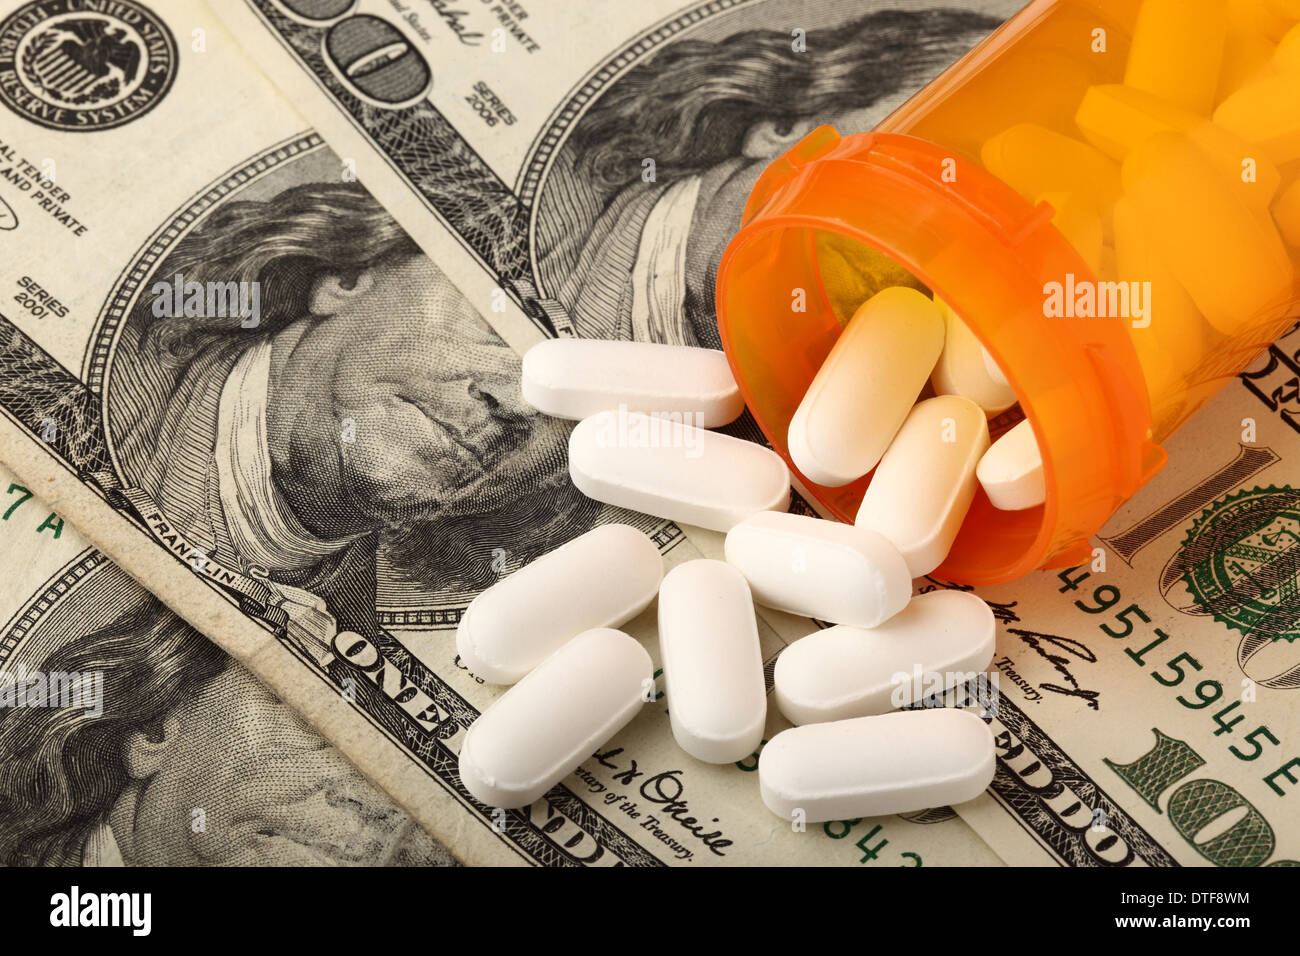 La prescrizione di farmaci con il dollaro USA per indicare la medicina è molto costoso Foto Stock